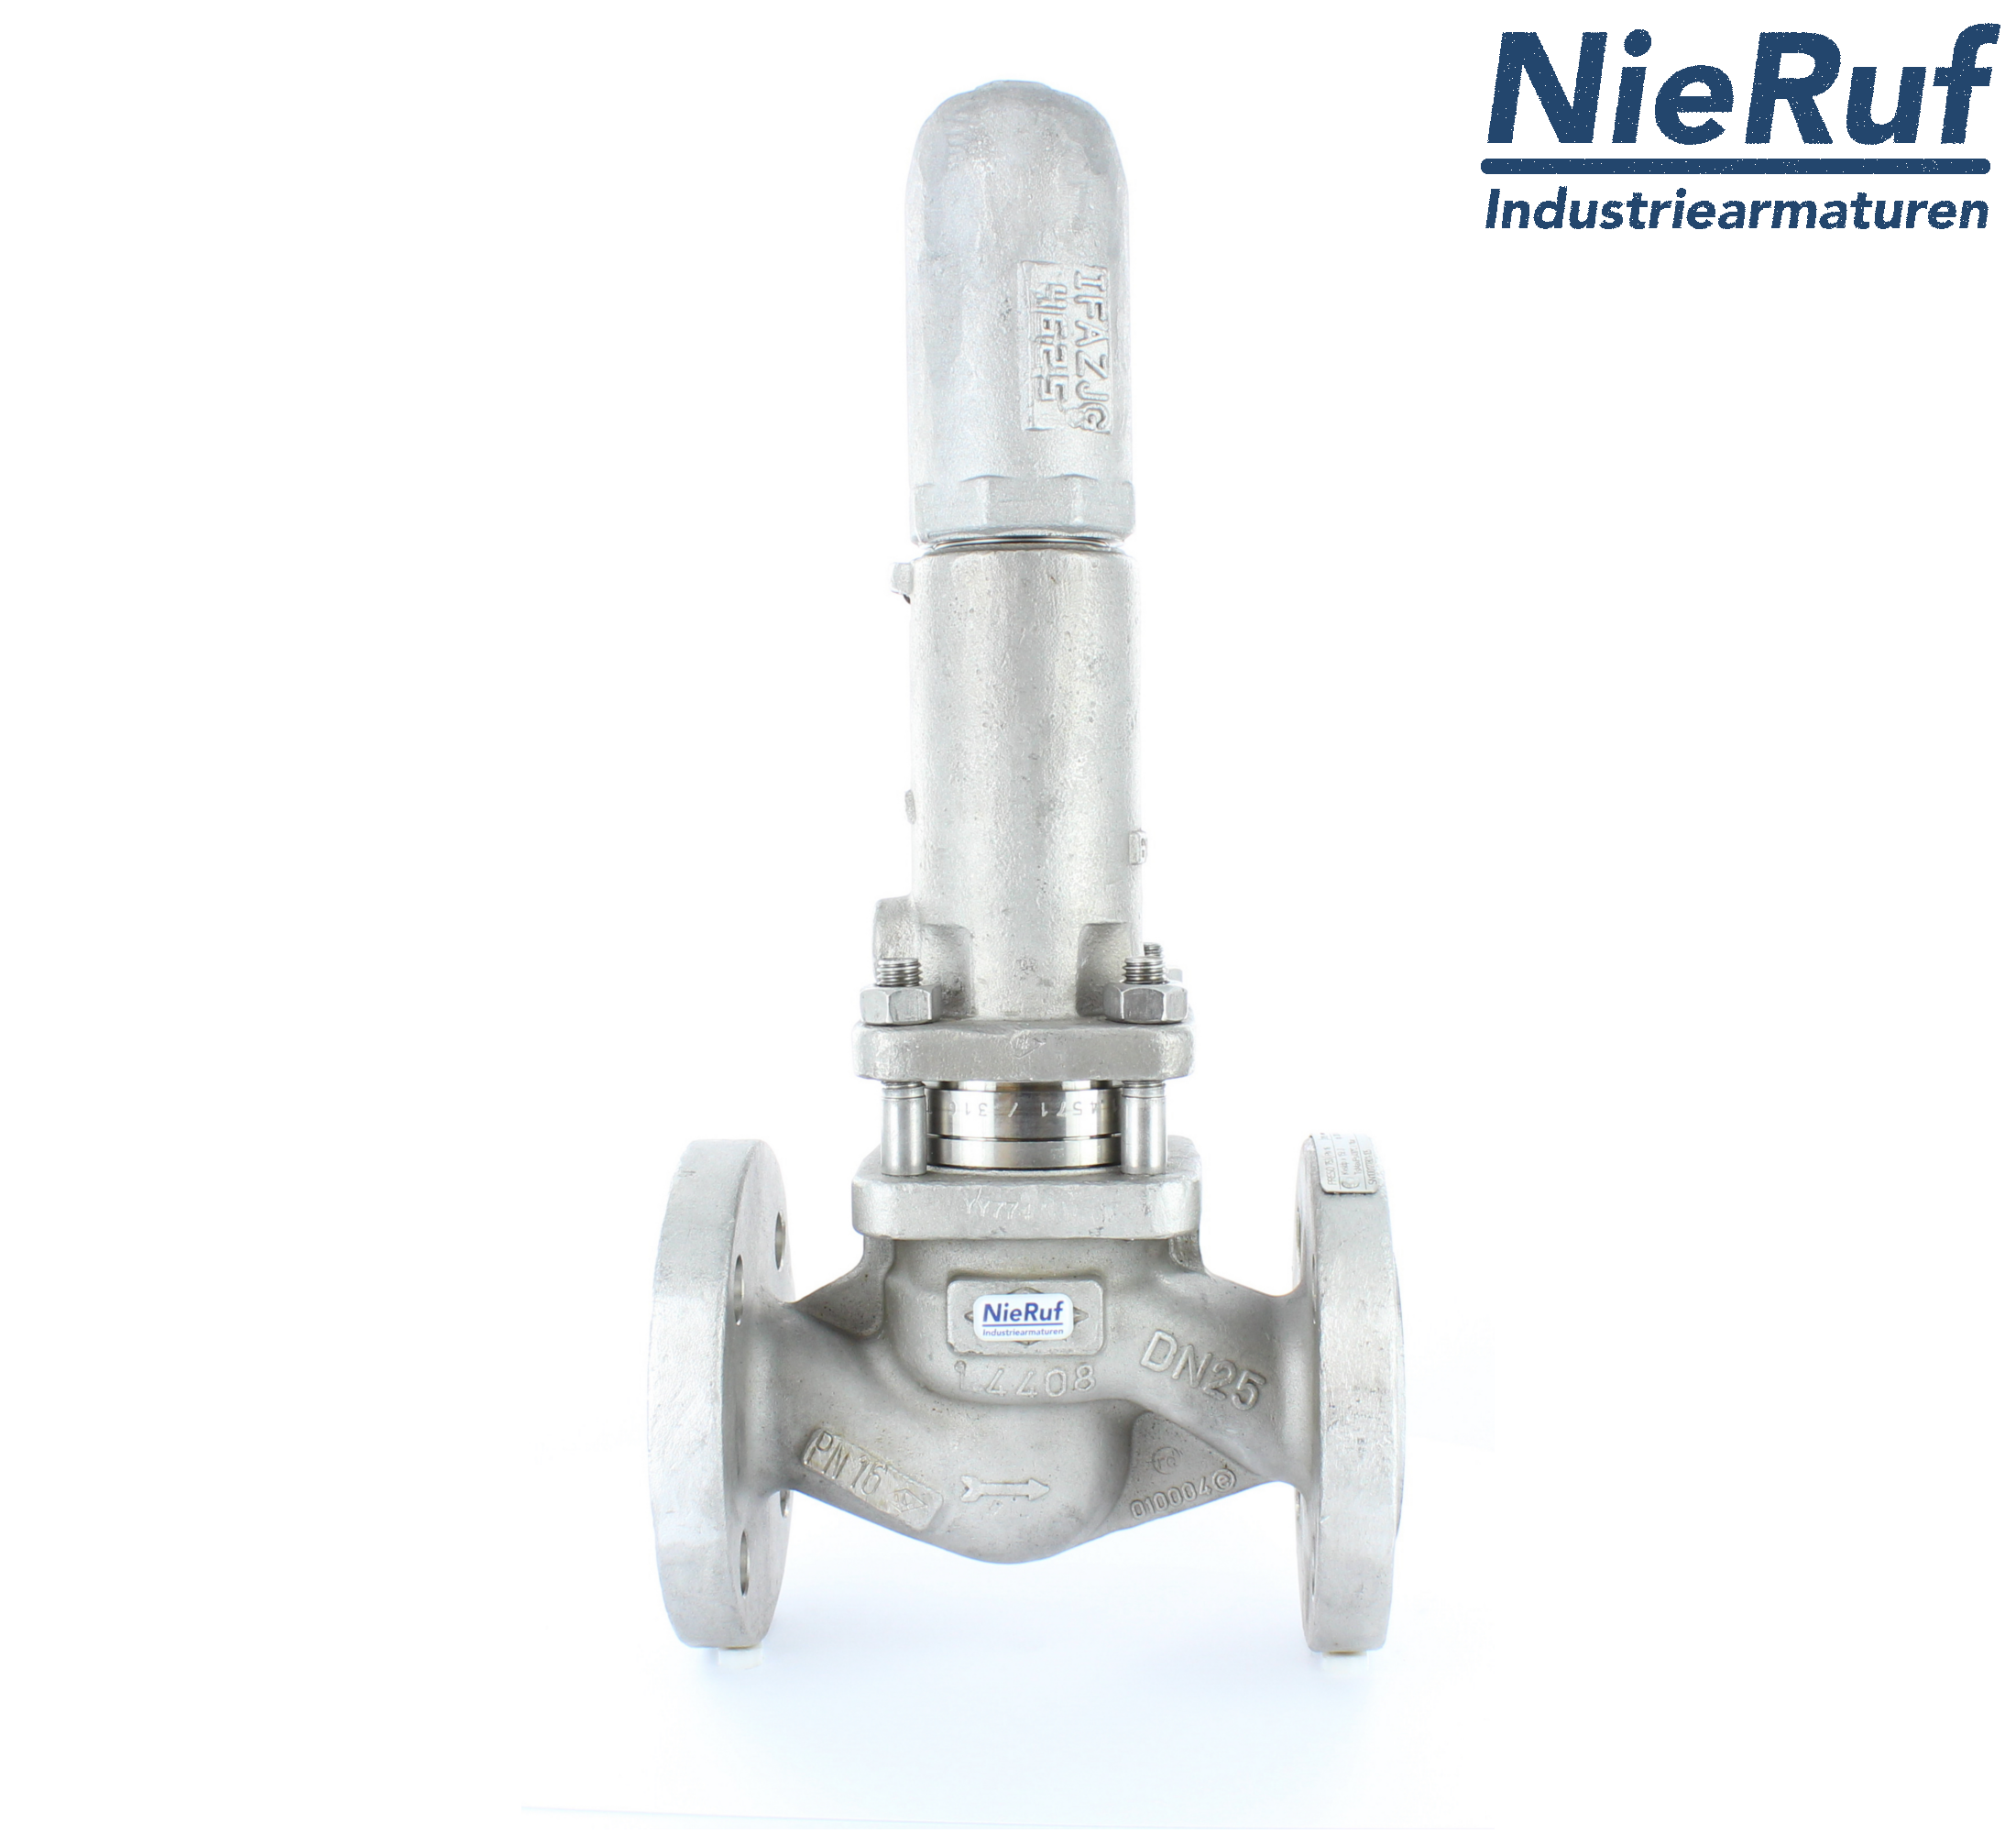 piston overflow valve DN 80 UV13 cast iron 1.0619+N 4,0 - 10,0 bar